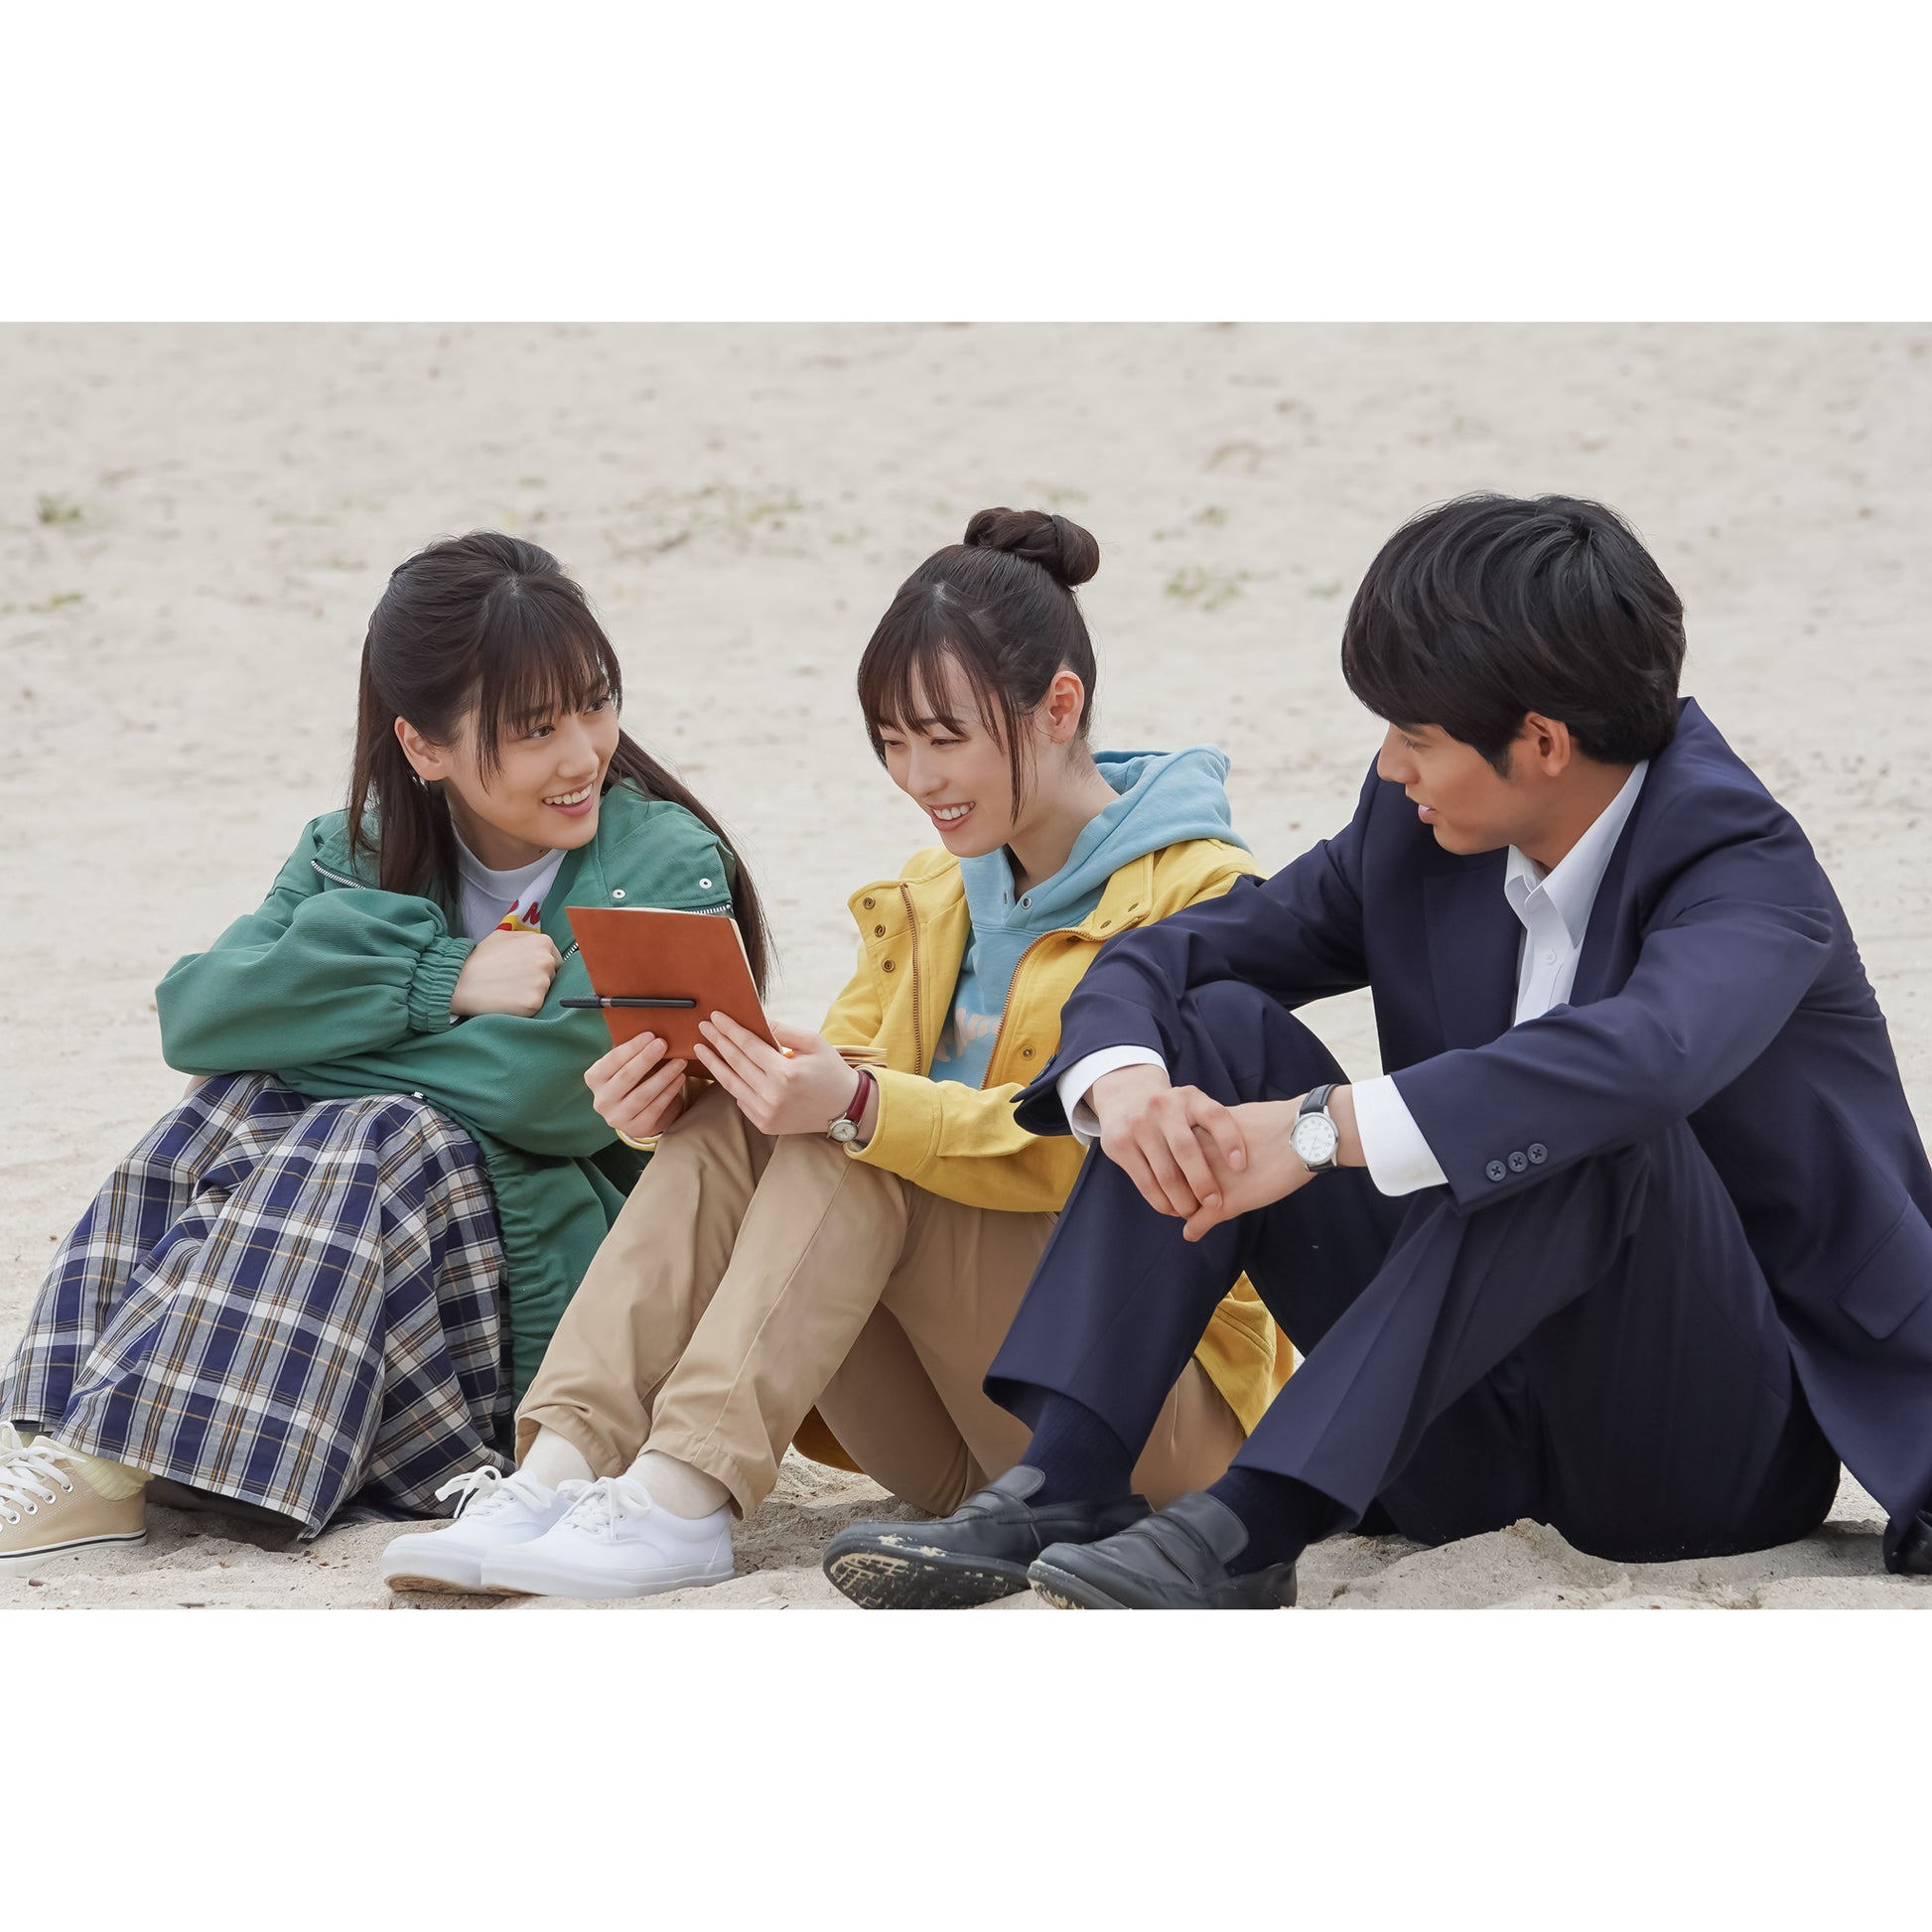 連続テレビ小説 舞いあがれ  完全版 Blu-ray BOX1〜3 セット